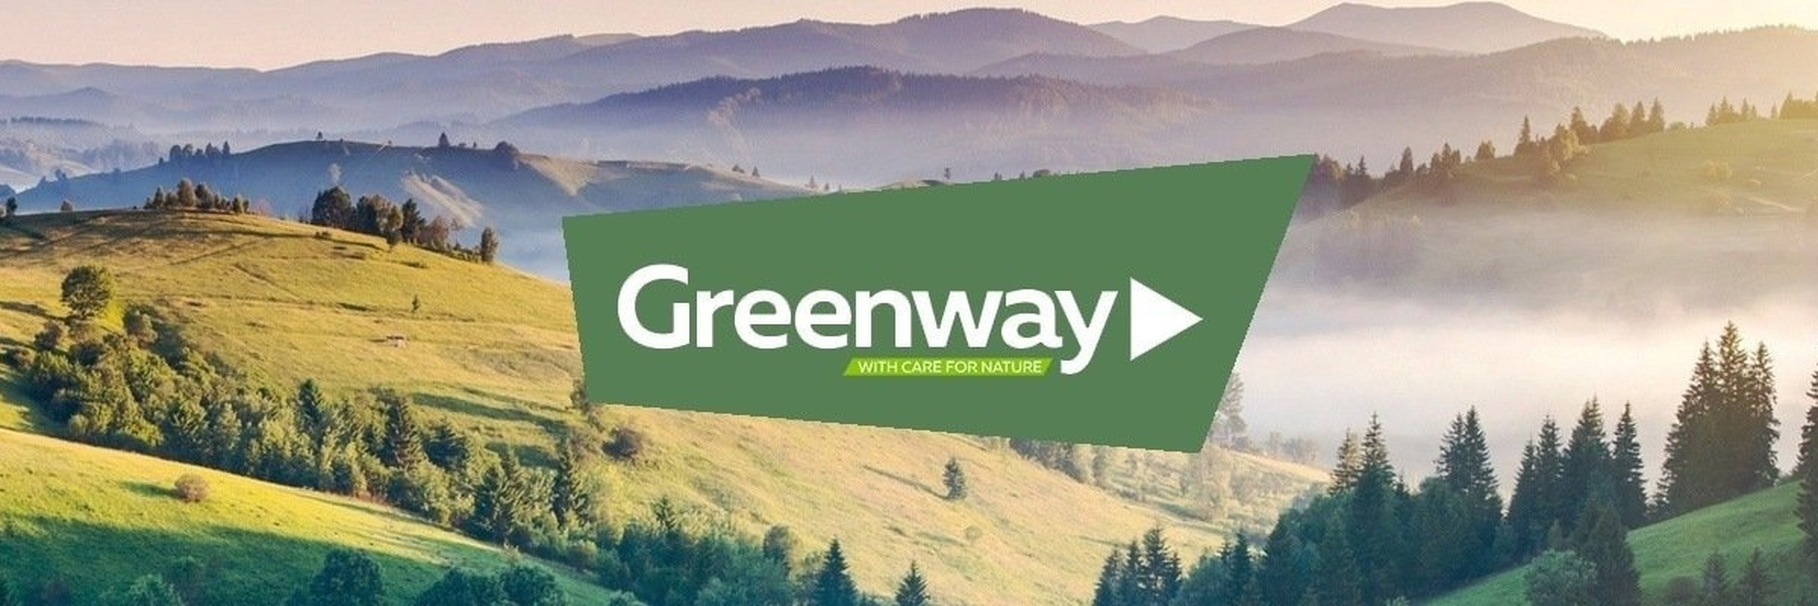 Косметика Greenway Global: зеленый путь к красоте и здоровью